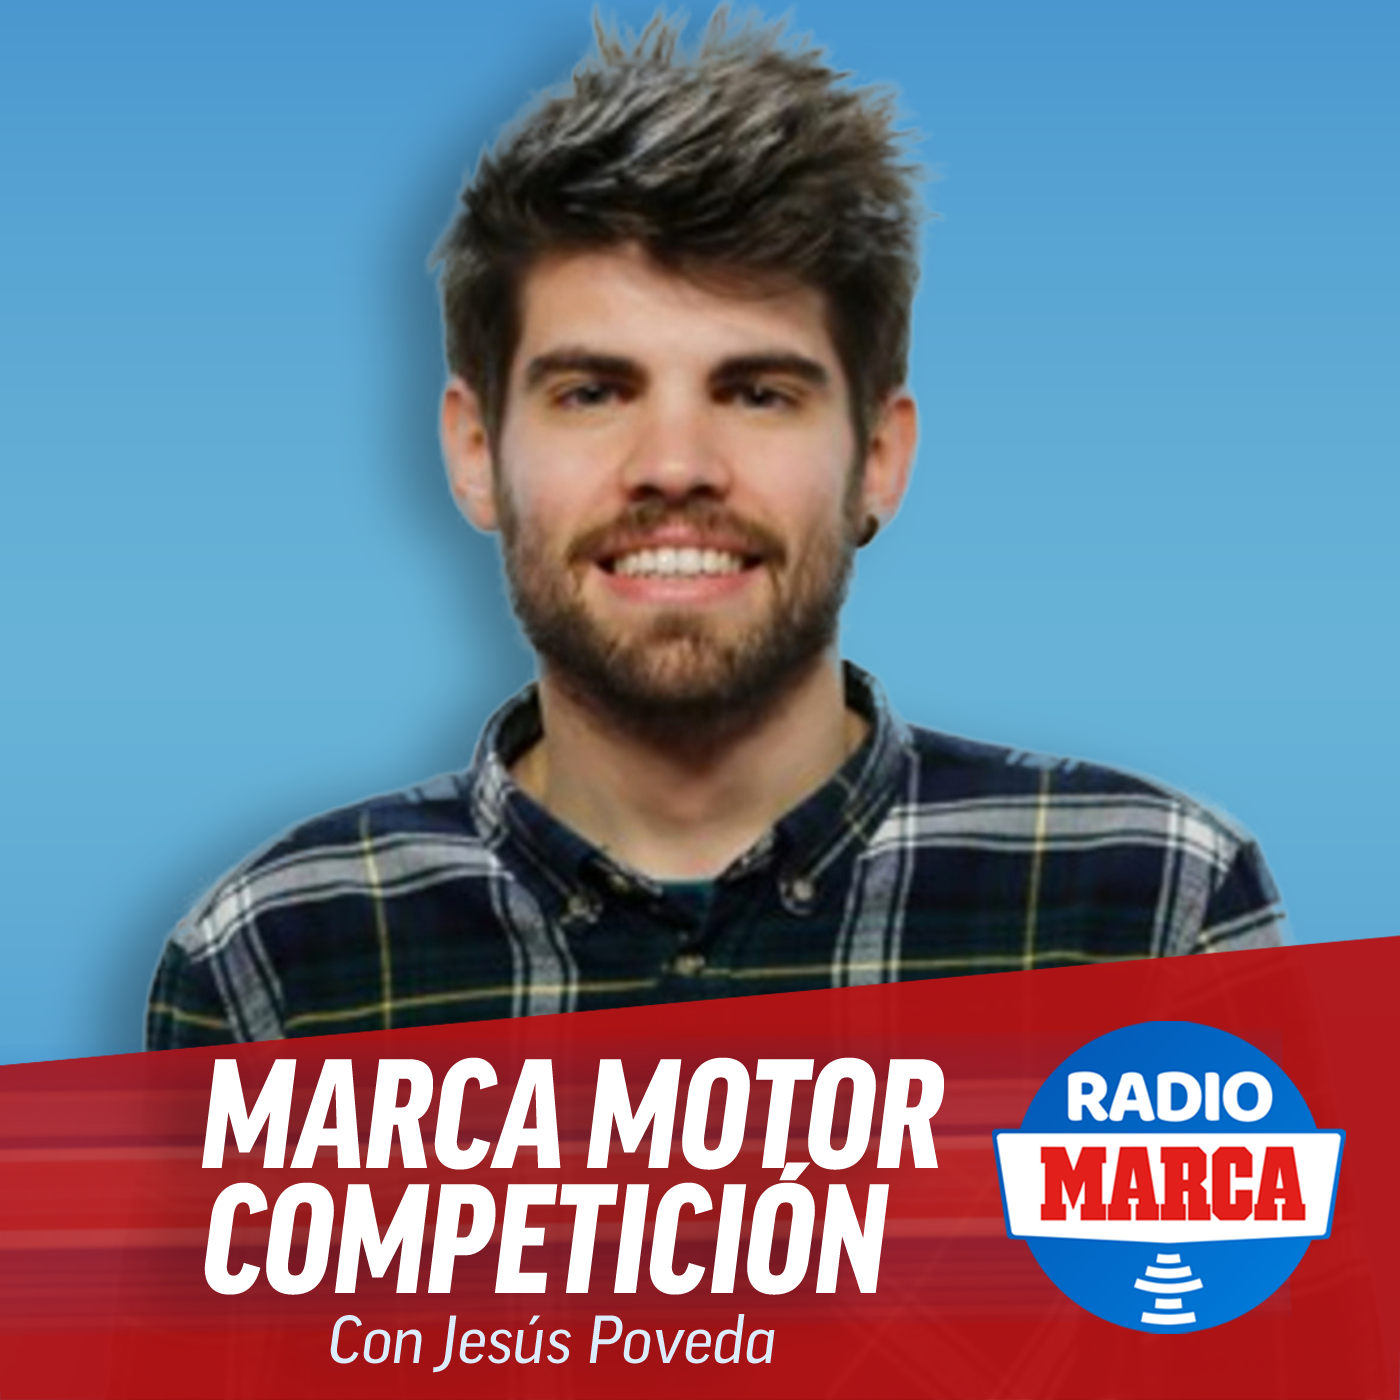 MARCA Motor Competición (10-1-2021)